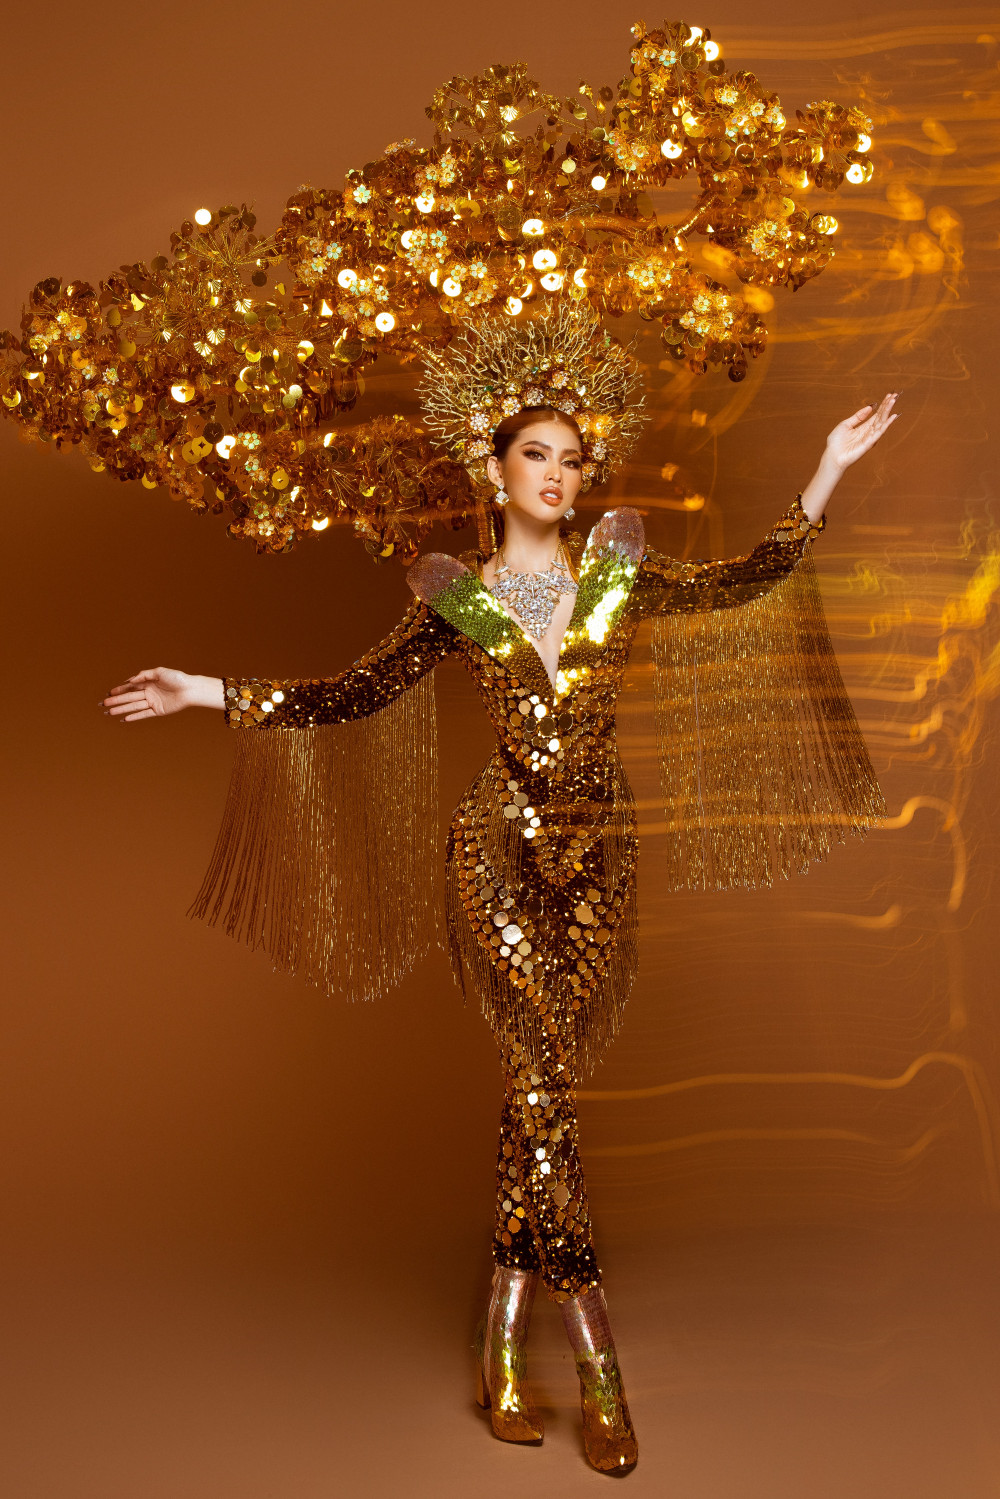 Ngày 24/3 tới đây, 63 thí sinh Hoa hậu Hoà bình Quốc tế sẽ bước vào phần thi trang phục truyền thống. Á hậu Ngọc Thảo sẽ trình diễn thiết kế mang tên Lá ngọc cành vàng của NTK Thái Trung Tín.